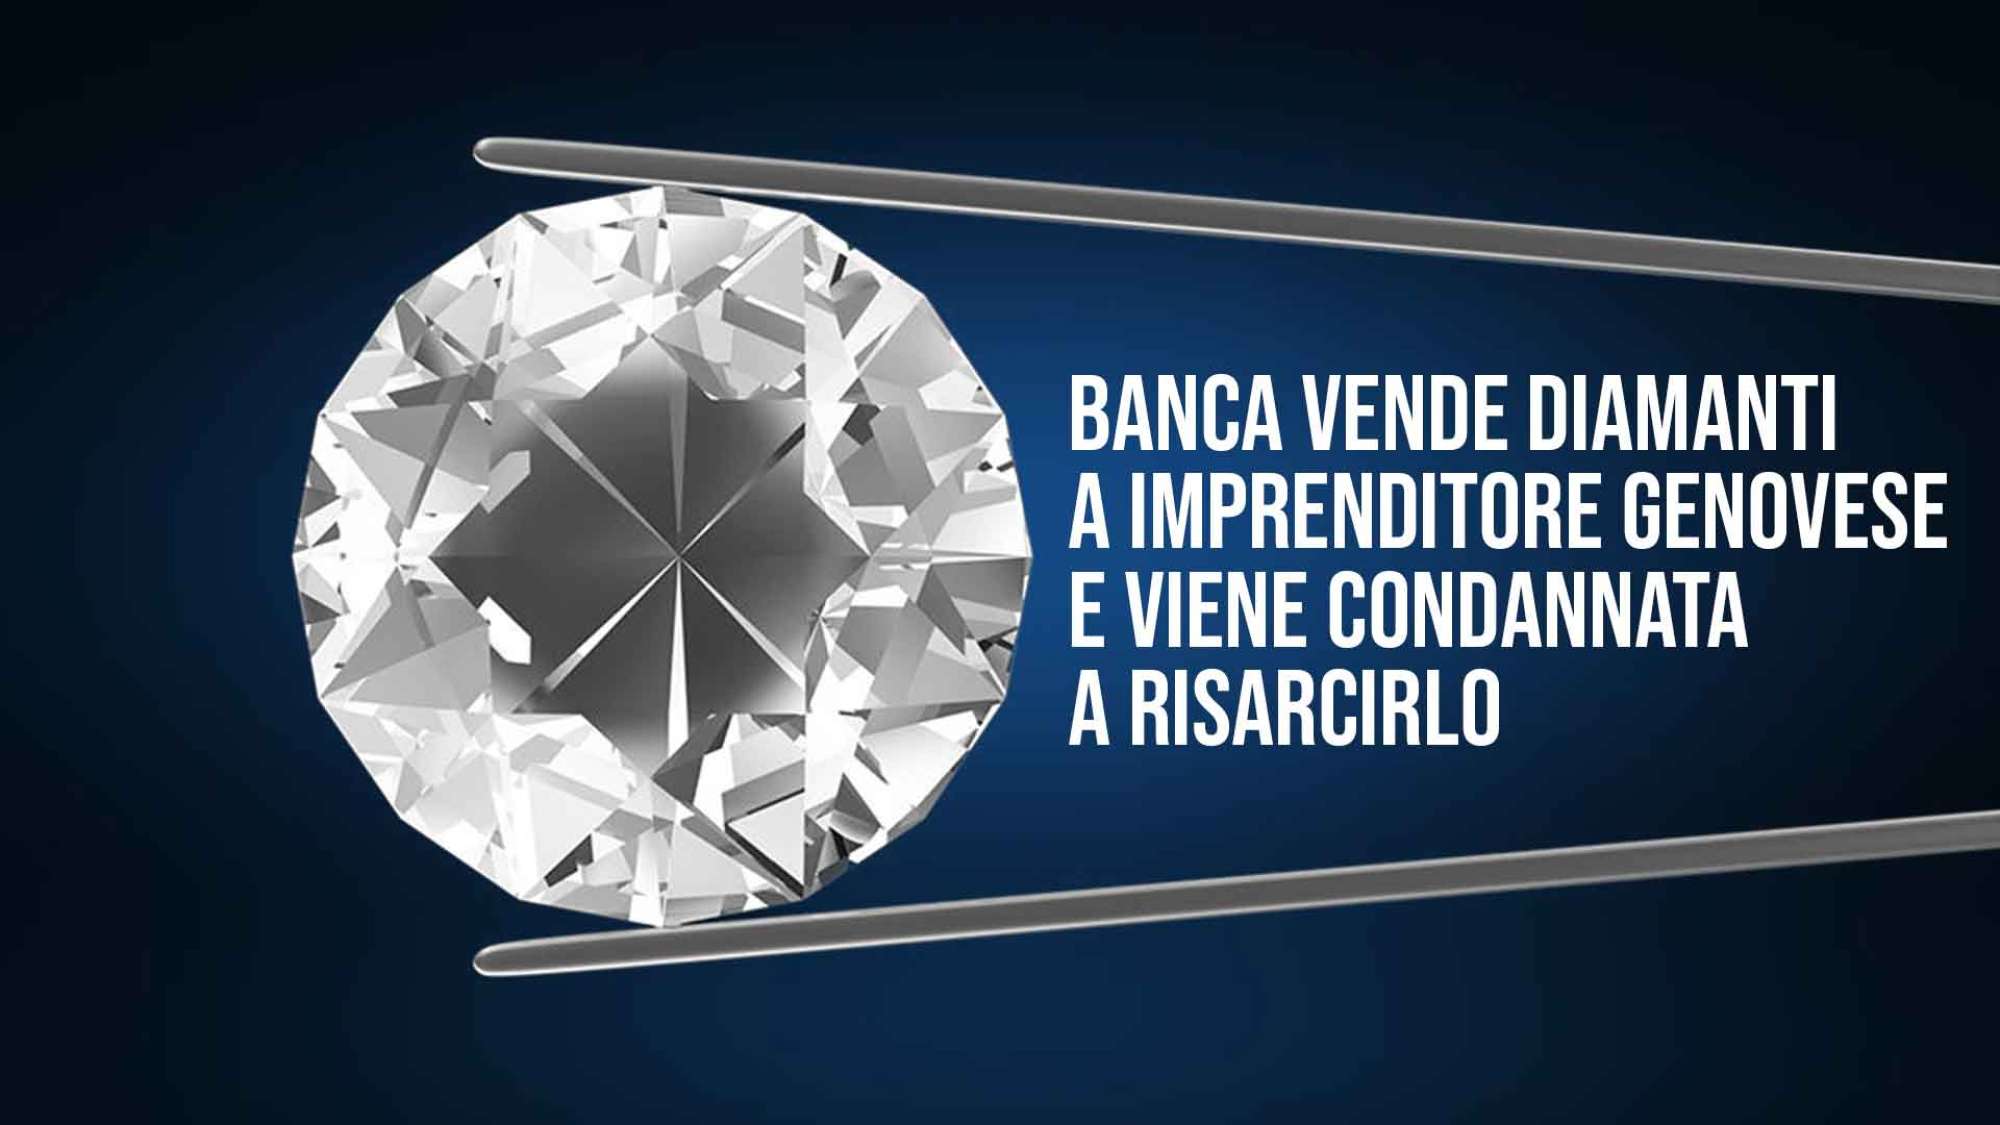 Banca vende diamanti e risarcire i clienti.